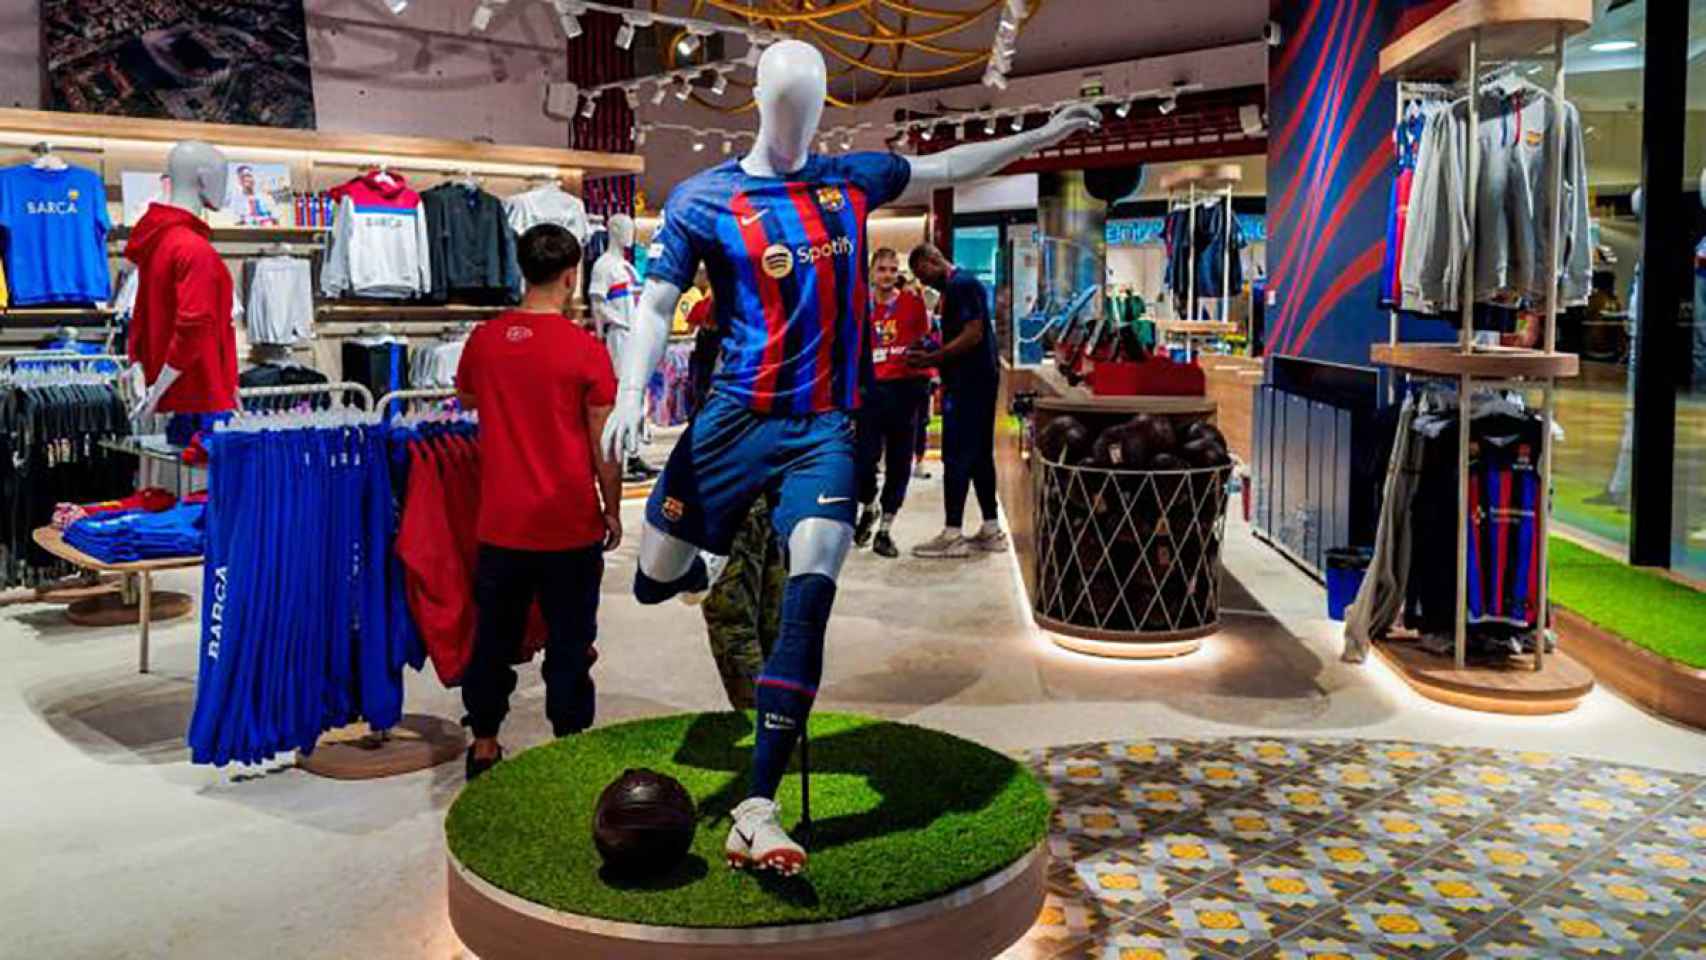 Imagen de la Barça Store de Tarragona, gestionada por BLM / FCB